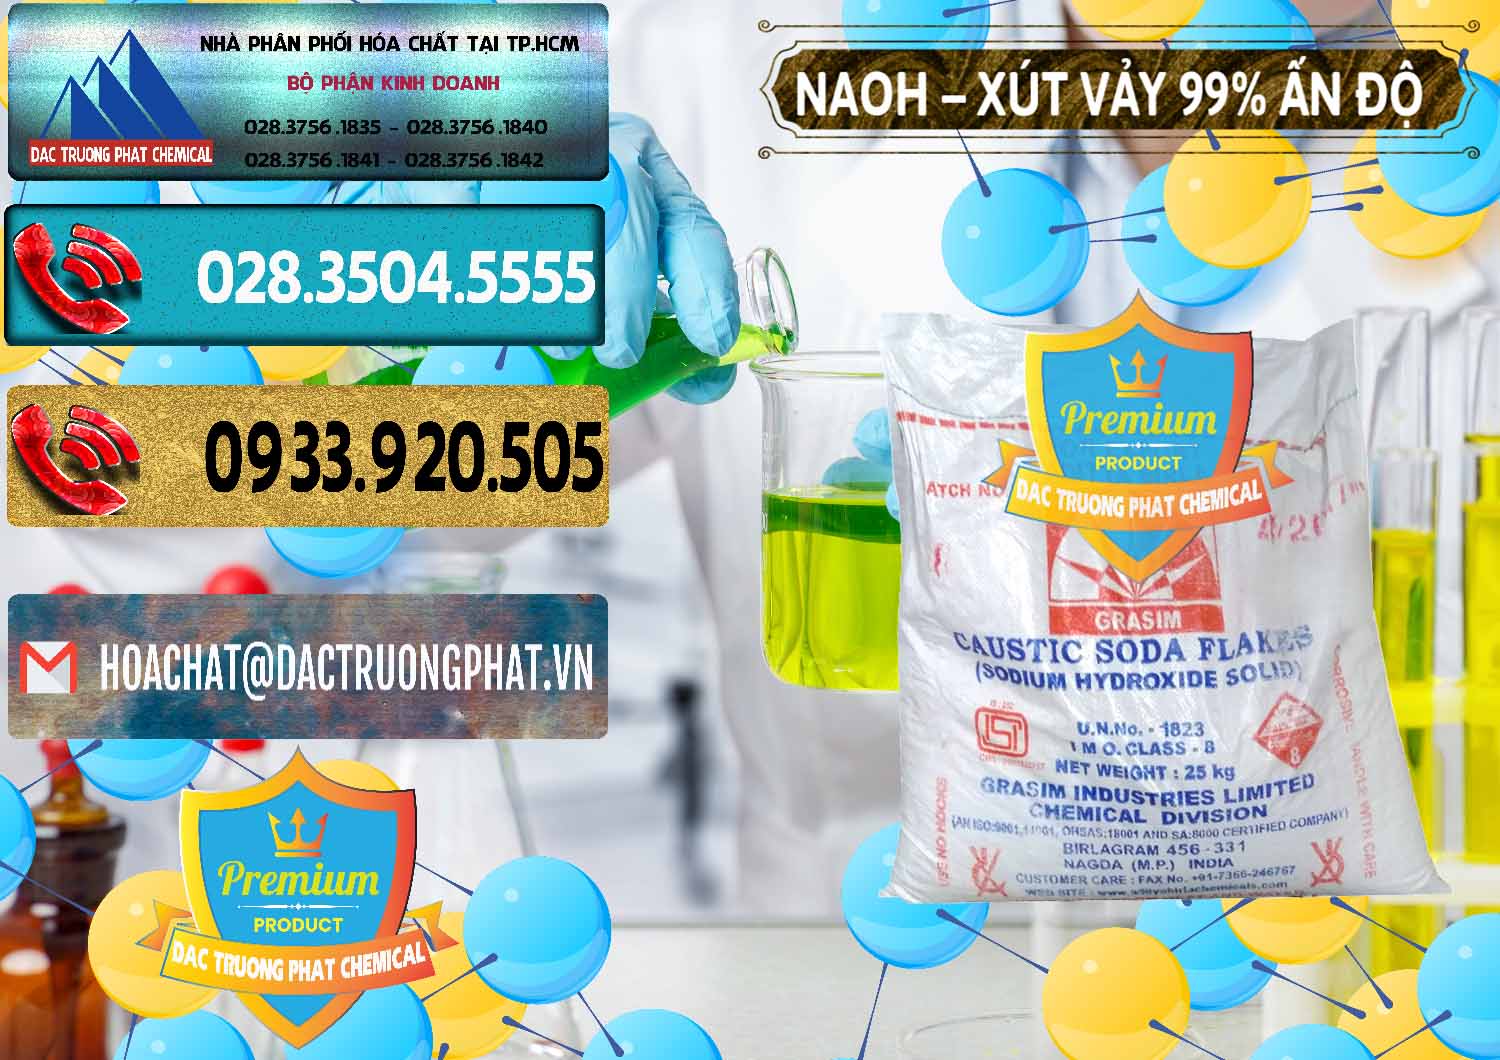 Cty cung cấp ( bán ) Xút Vảy - NaOH Vảy 99% Aditya Birla Grasim Ấn Độ India - 0171 - Cty bán và cung cấp hóa chất tại TP.HCM - hoachatdetnhuom.com